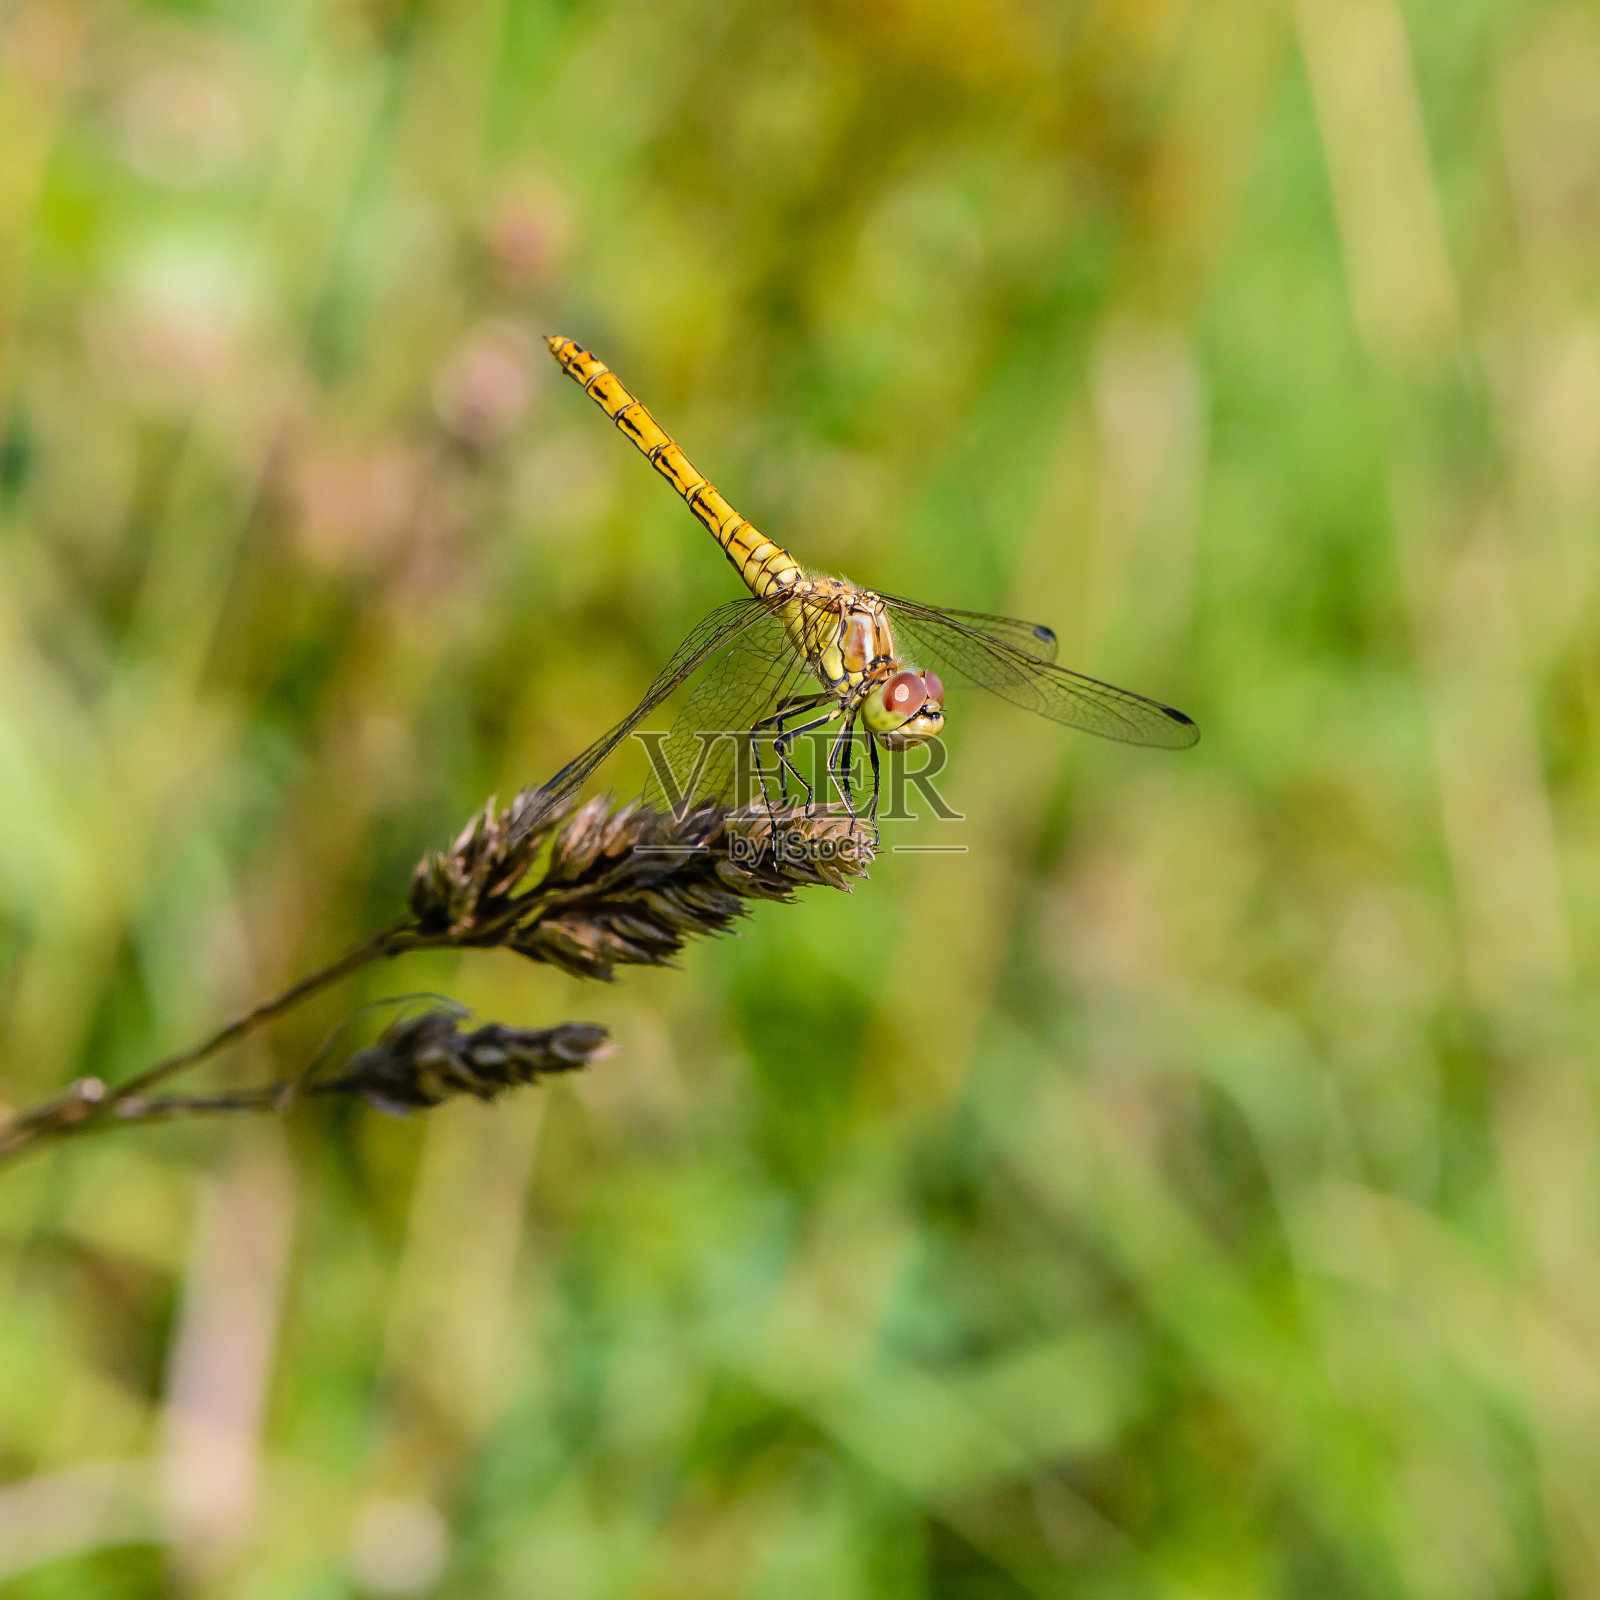 一只黄色的大蜻蜓坐在一片干燥的草叶上照片摄影图片